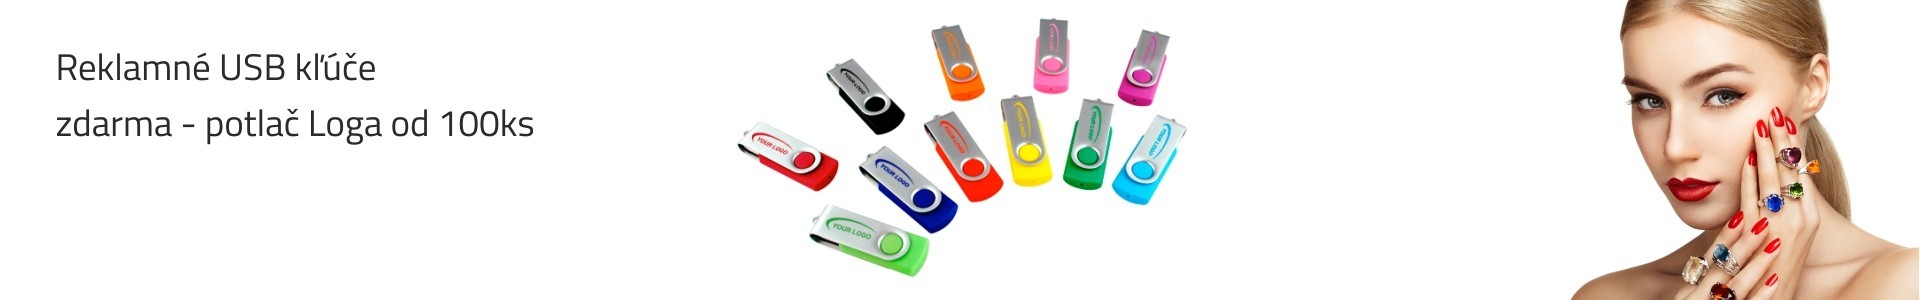 Reklamné USB kľúče + zdarma potlač Loga od 100ks USB do 3 dní